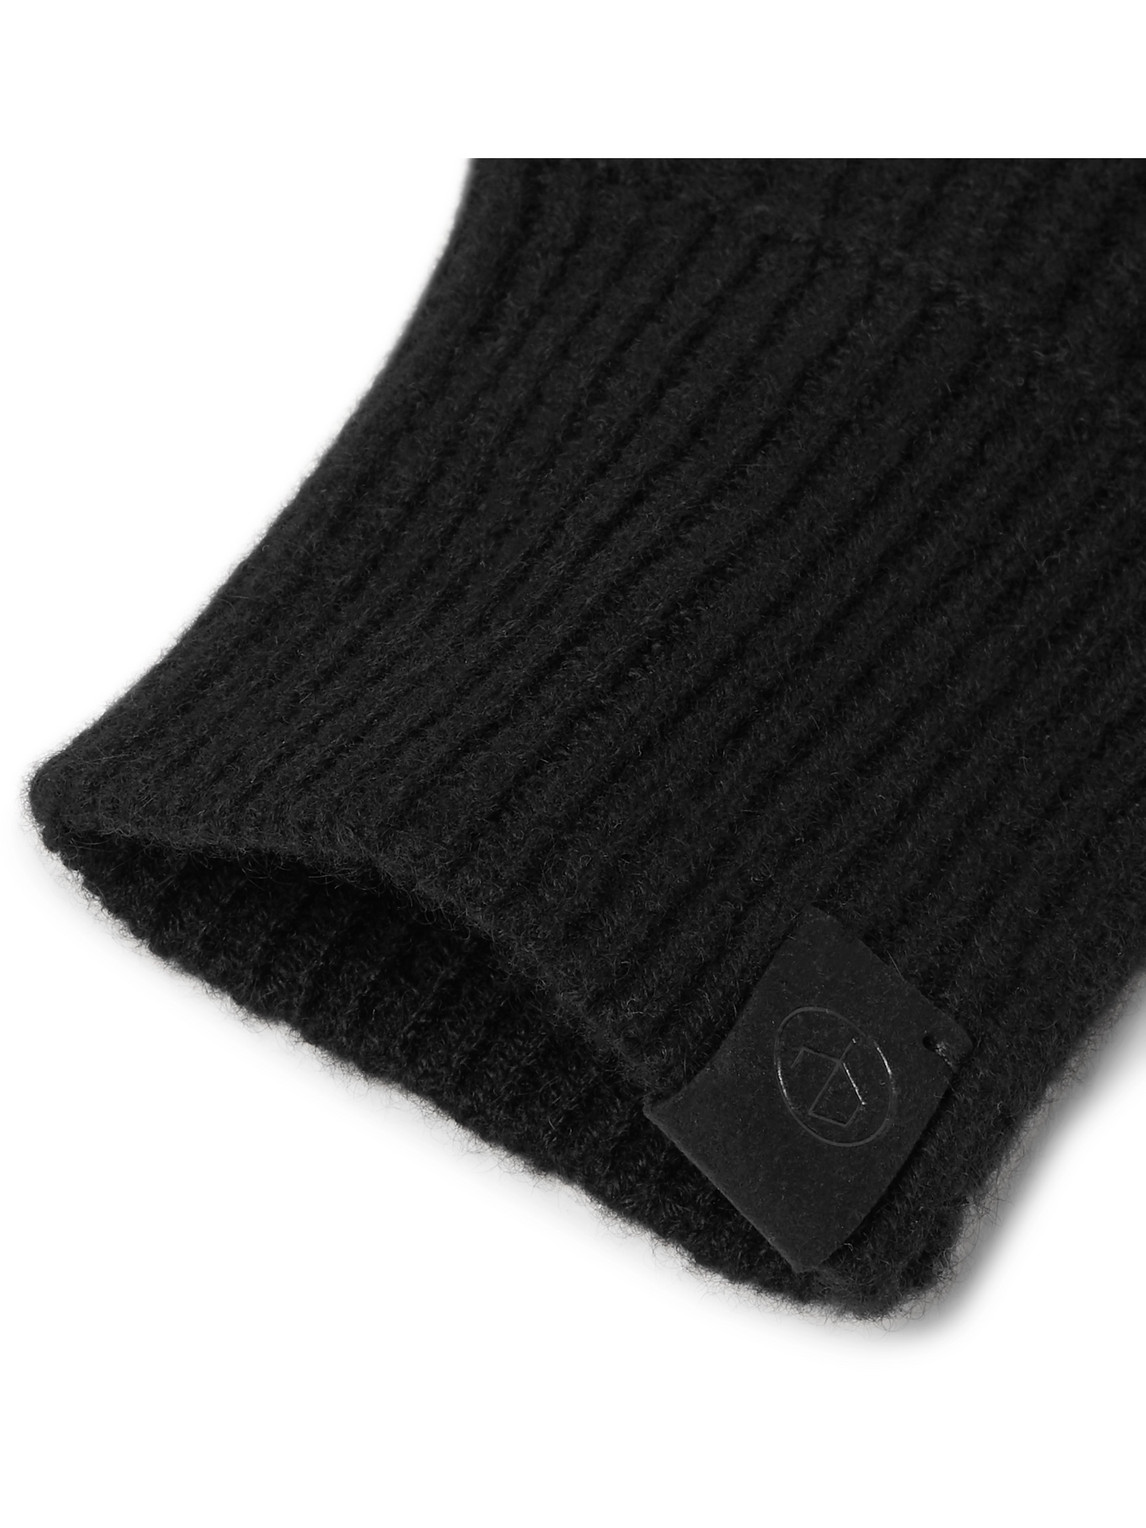 Rag & Bone Ace Ribbed Cashmere Fingerless Gloves In Black